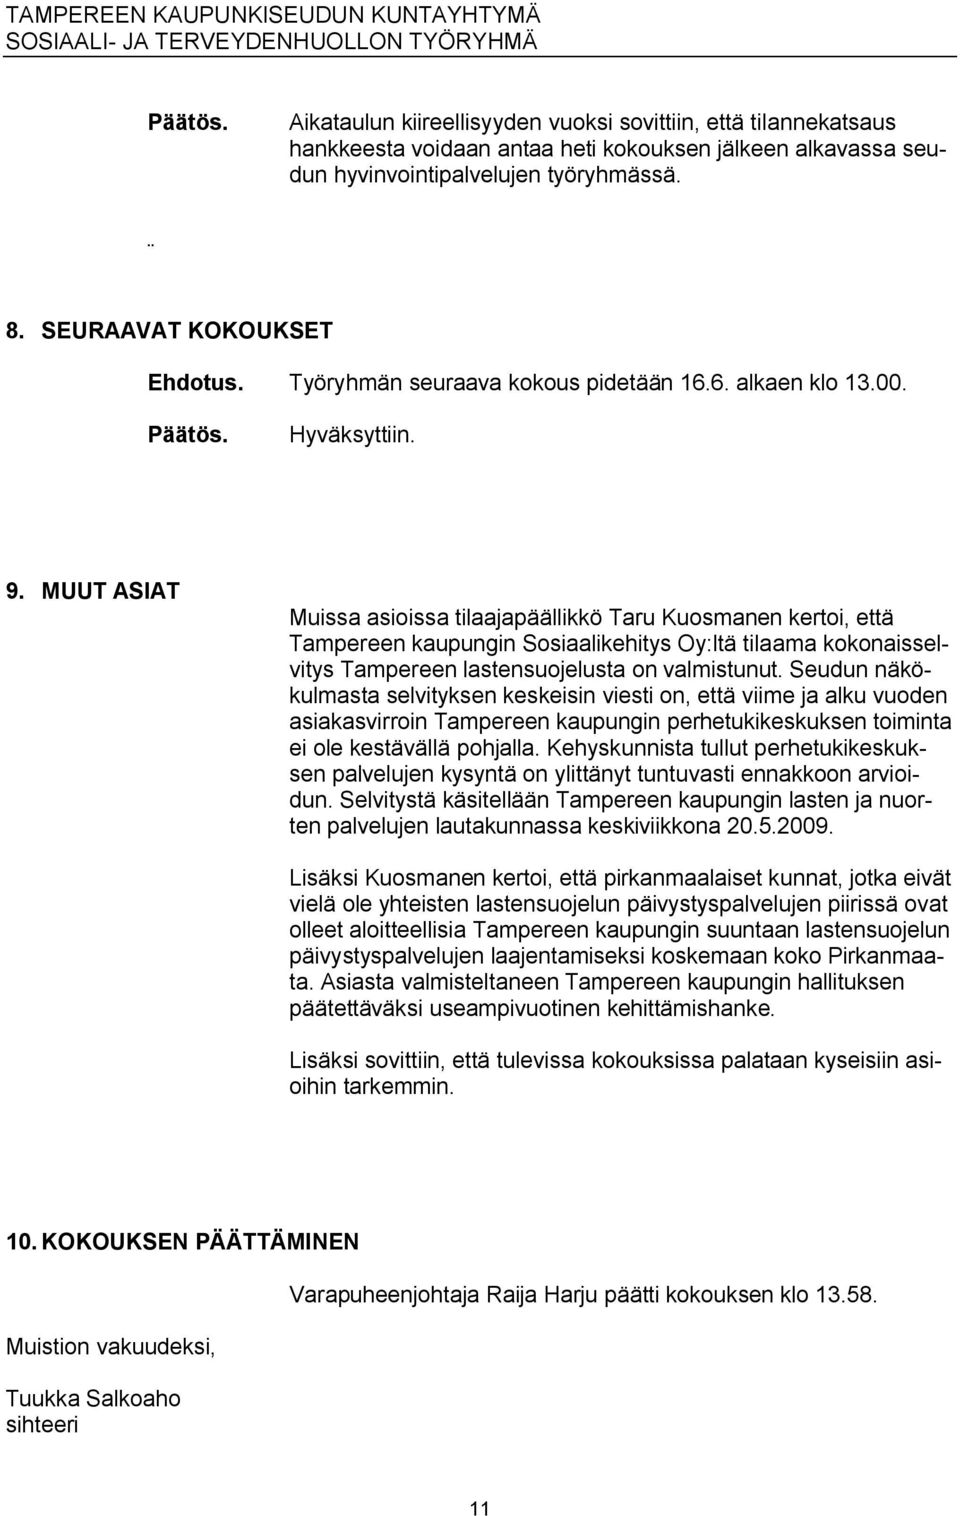 MUUT ASIAT Muissa asioissa tilaajapäällikkö Taru Kuosmanen kertoi, että Tampereen kaupungin Sosiaalikehitys Oy:ltä tilaama kokonaisselvitys Tampereen lastensuojelusta on valmistunut.